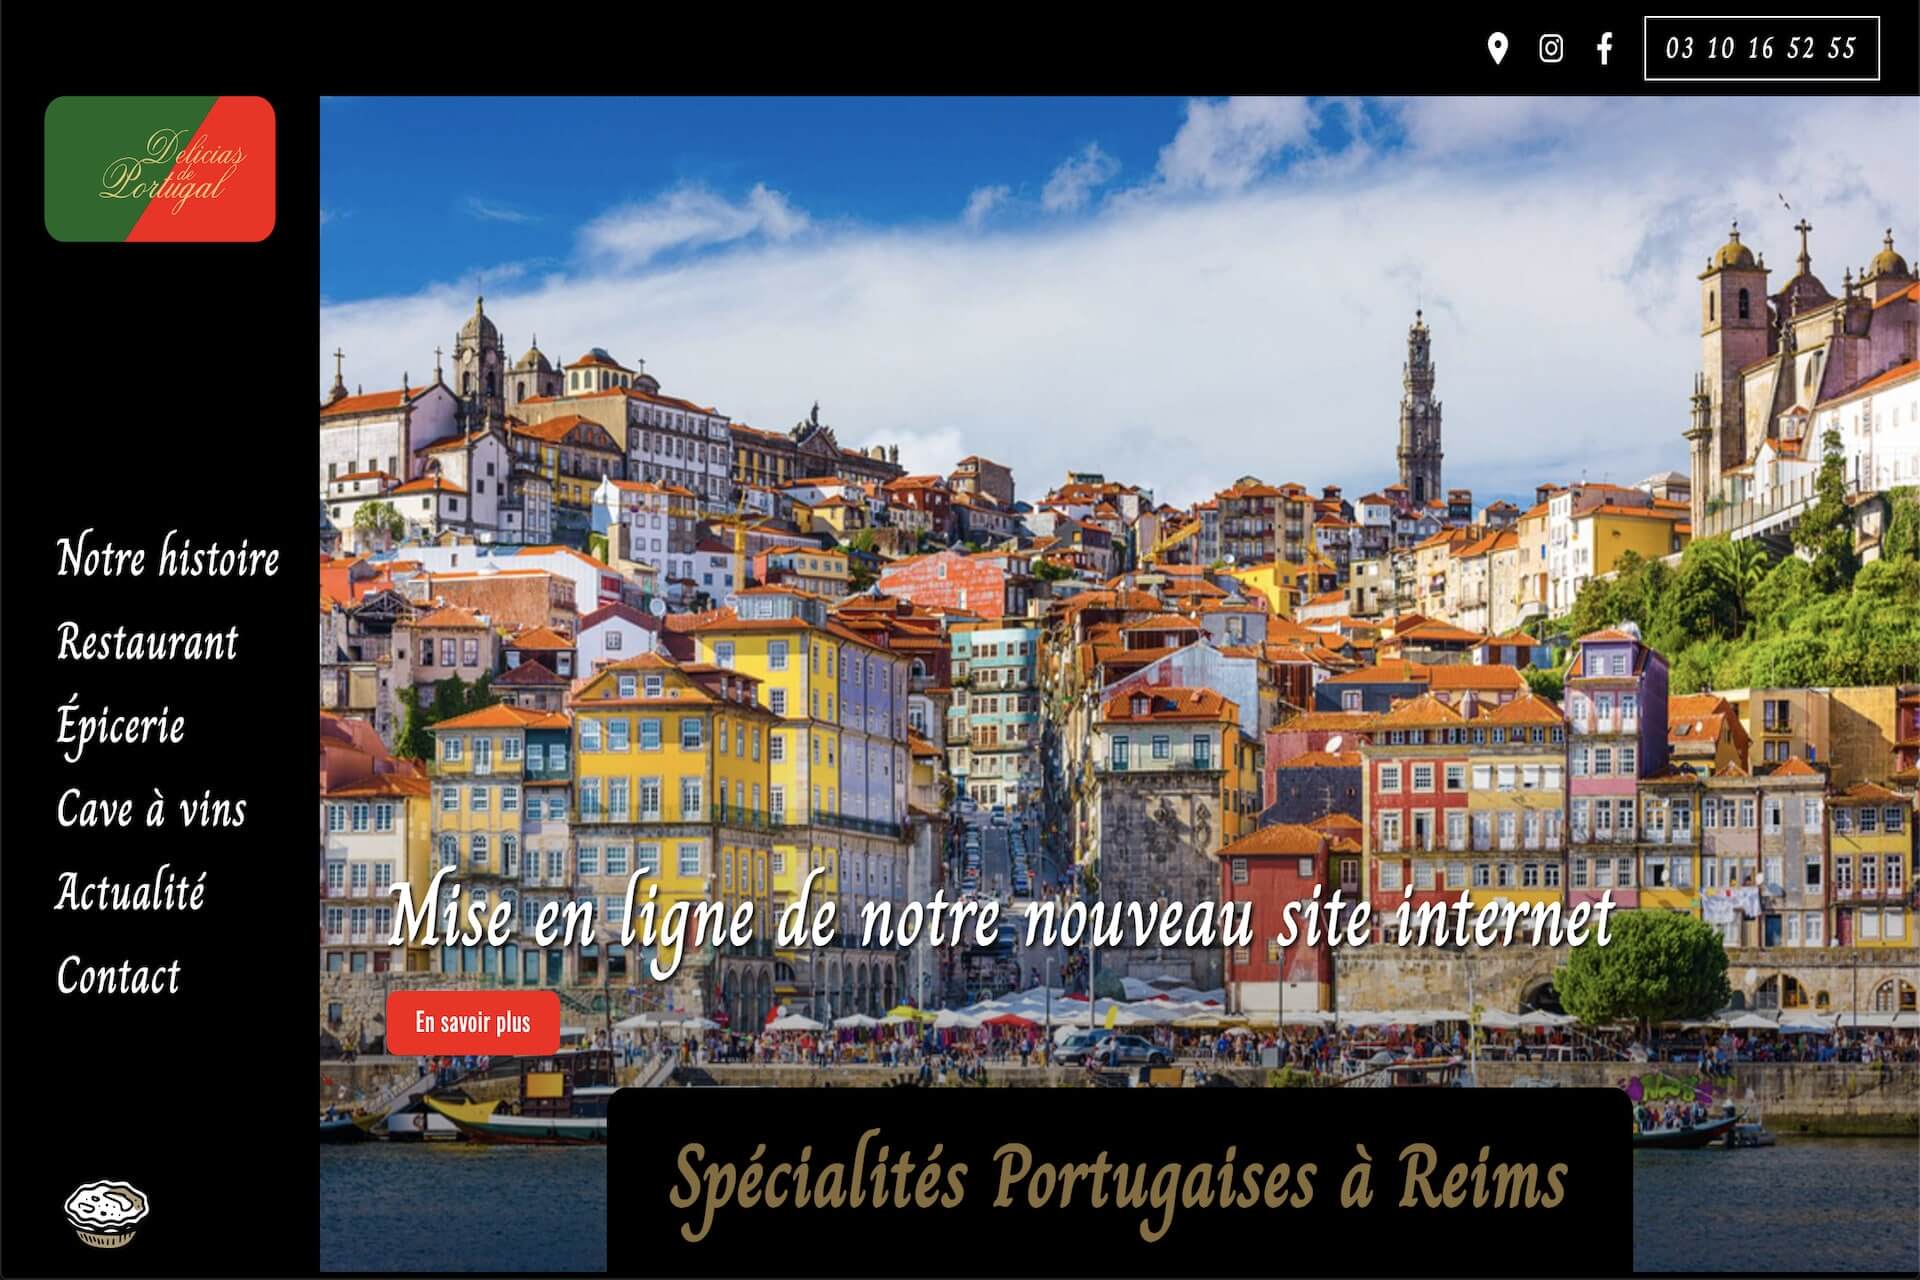 Copie d'écran de la page d'accueil du tout nouveau site internet du restaurant Delicias de Portugal à Reims